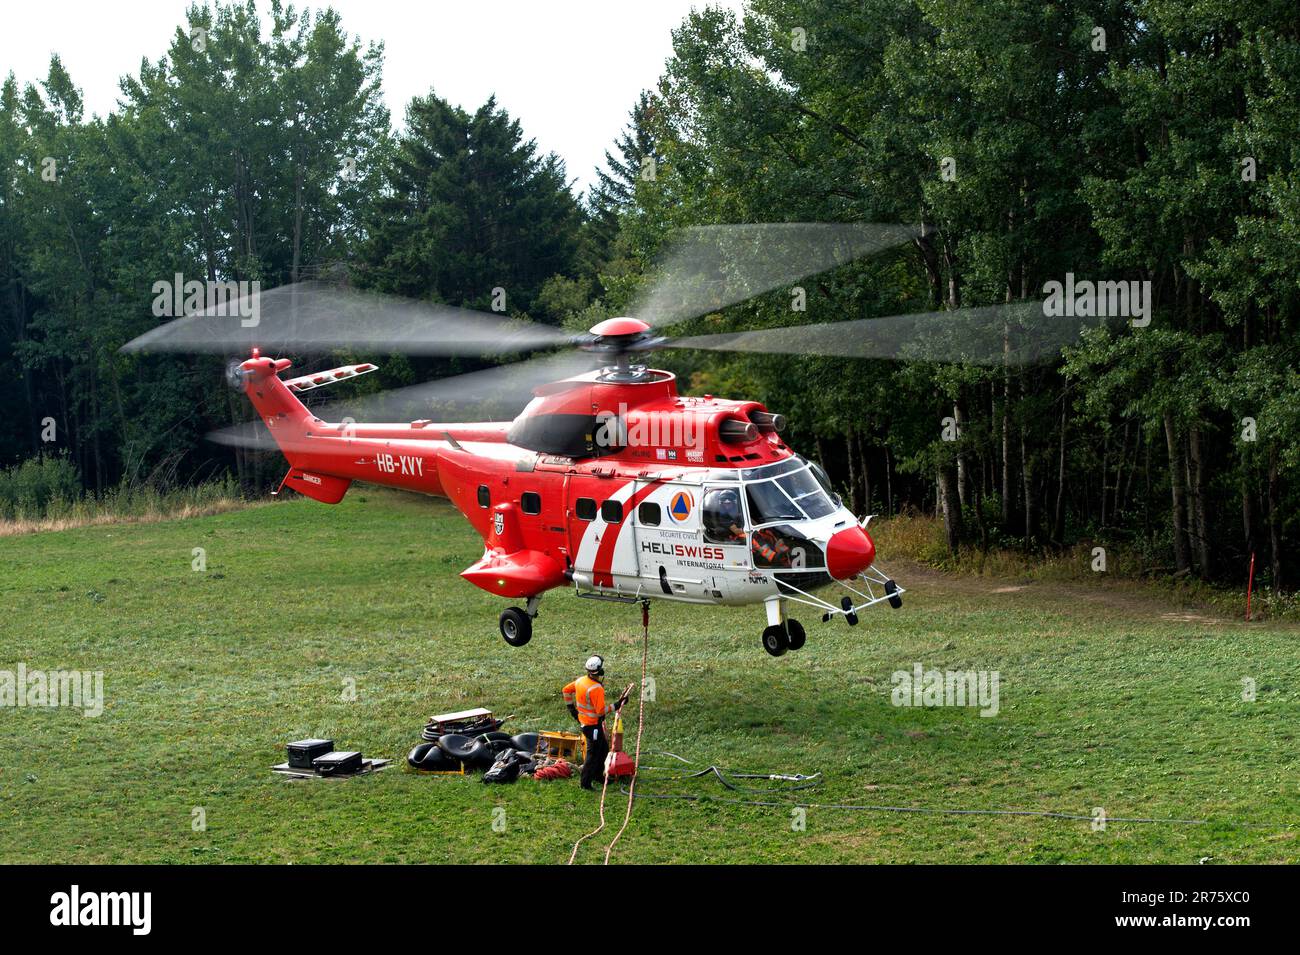 Elicottero da trasporto multiuso AS 332 Super Puma C1 HB-XVY di Heliswiss International AG decolta da un prato forestale, Vallese, Svizzera Foto Stock